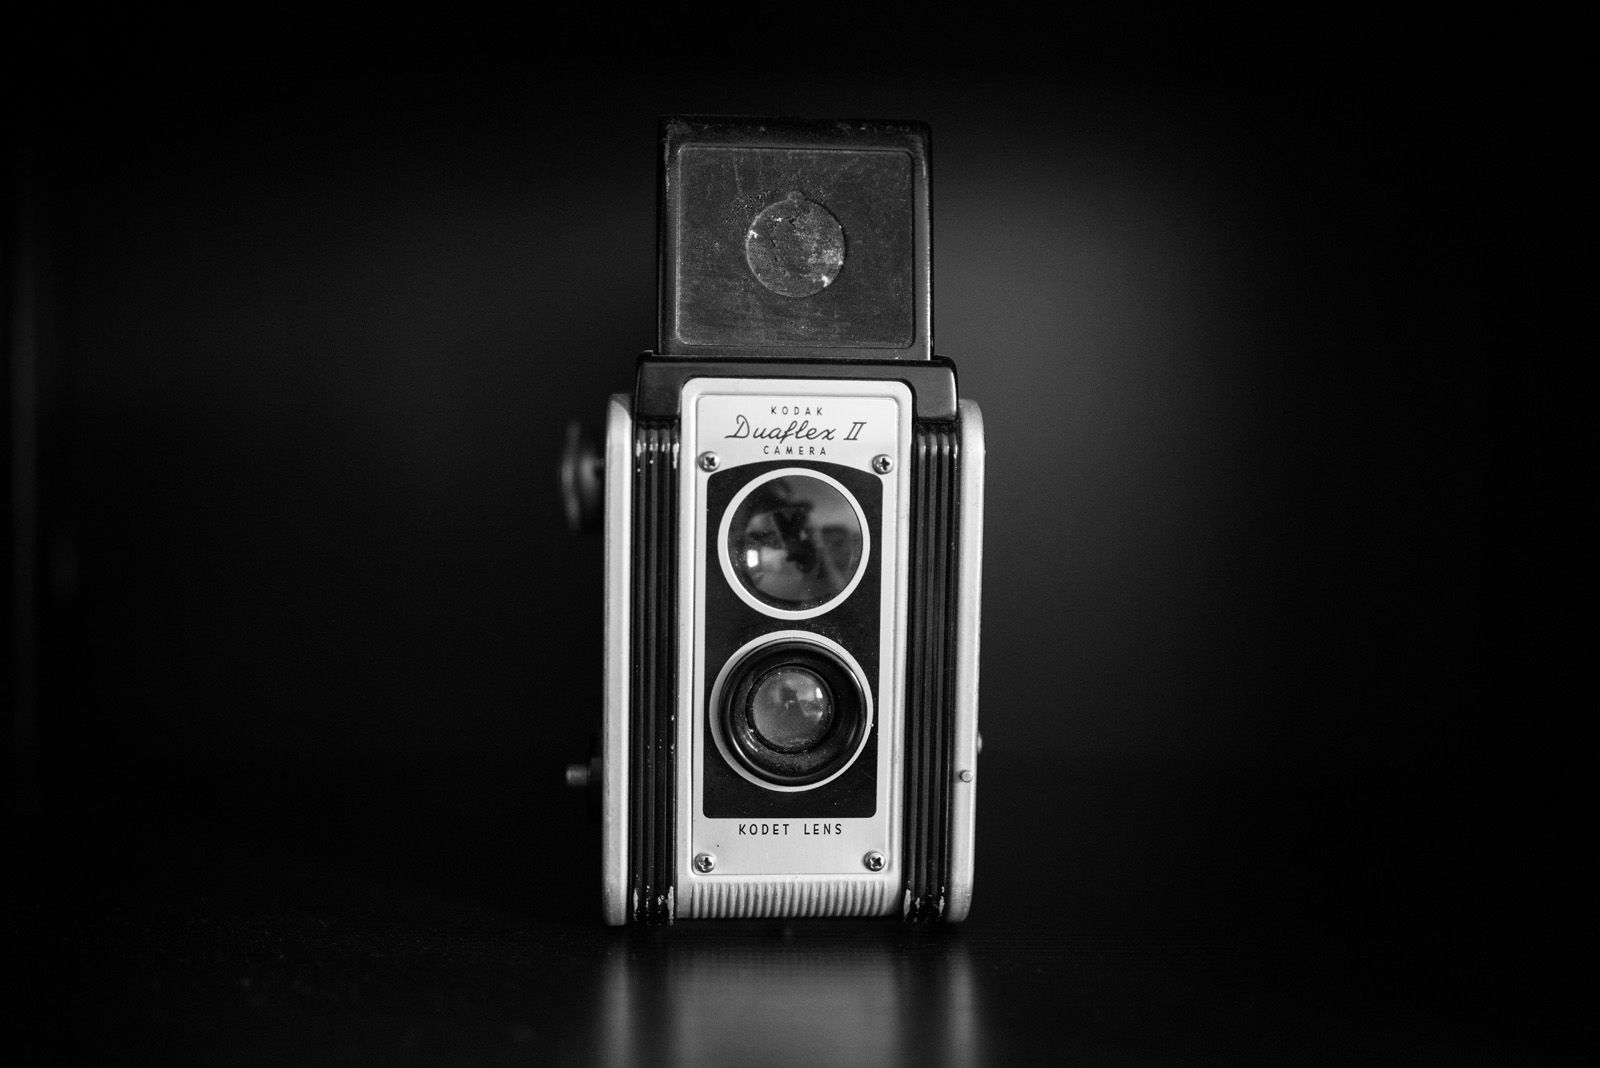 A classic Kodak Duaflex II camera